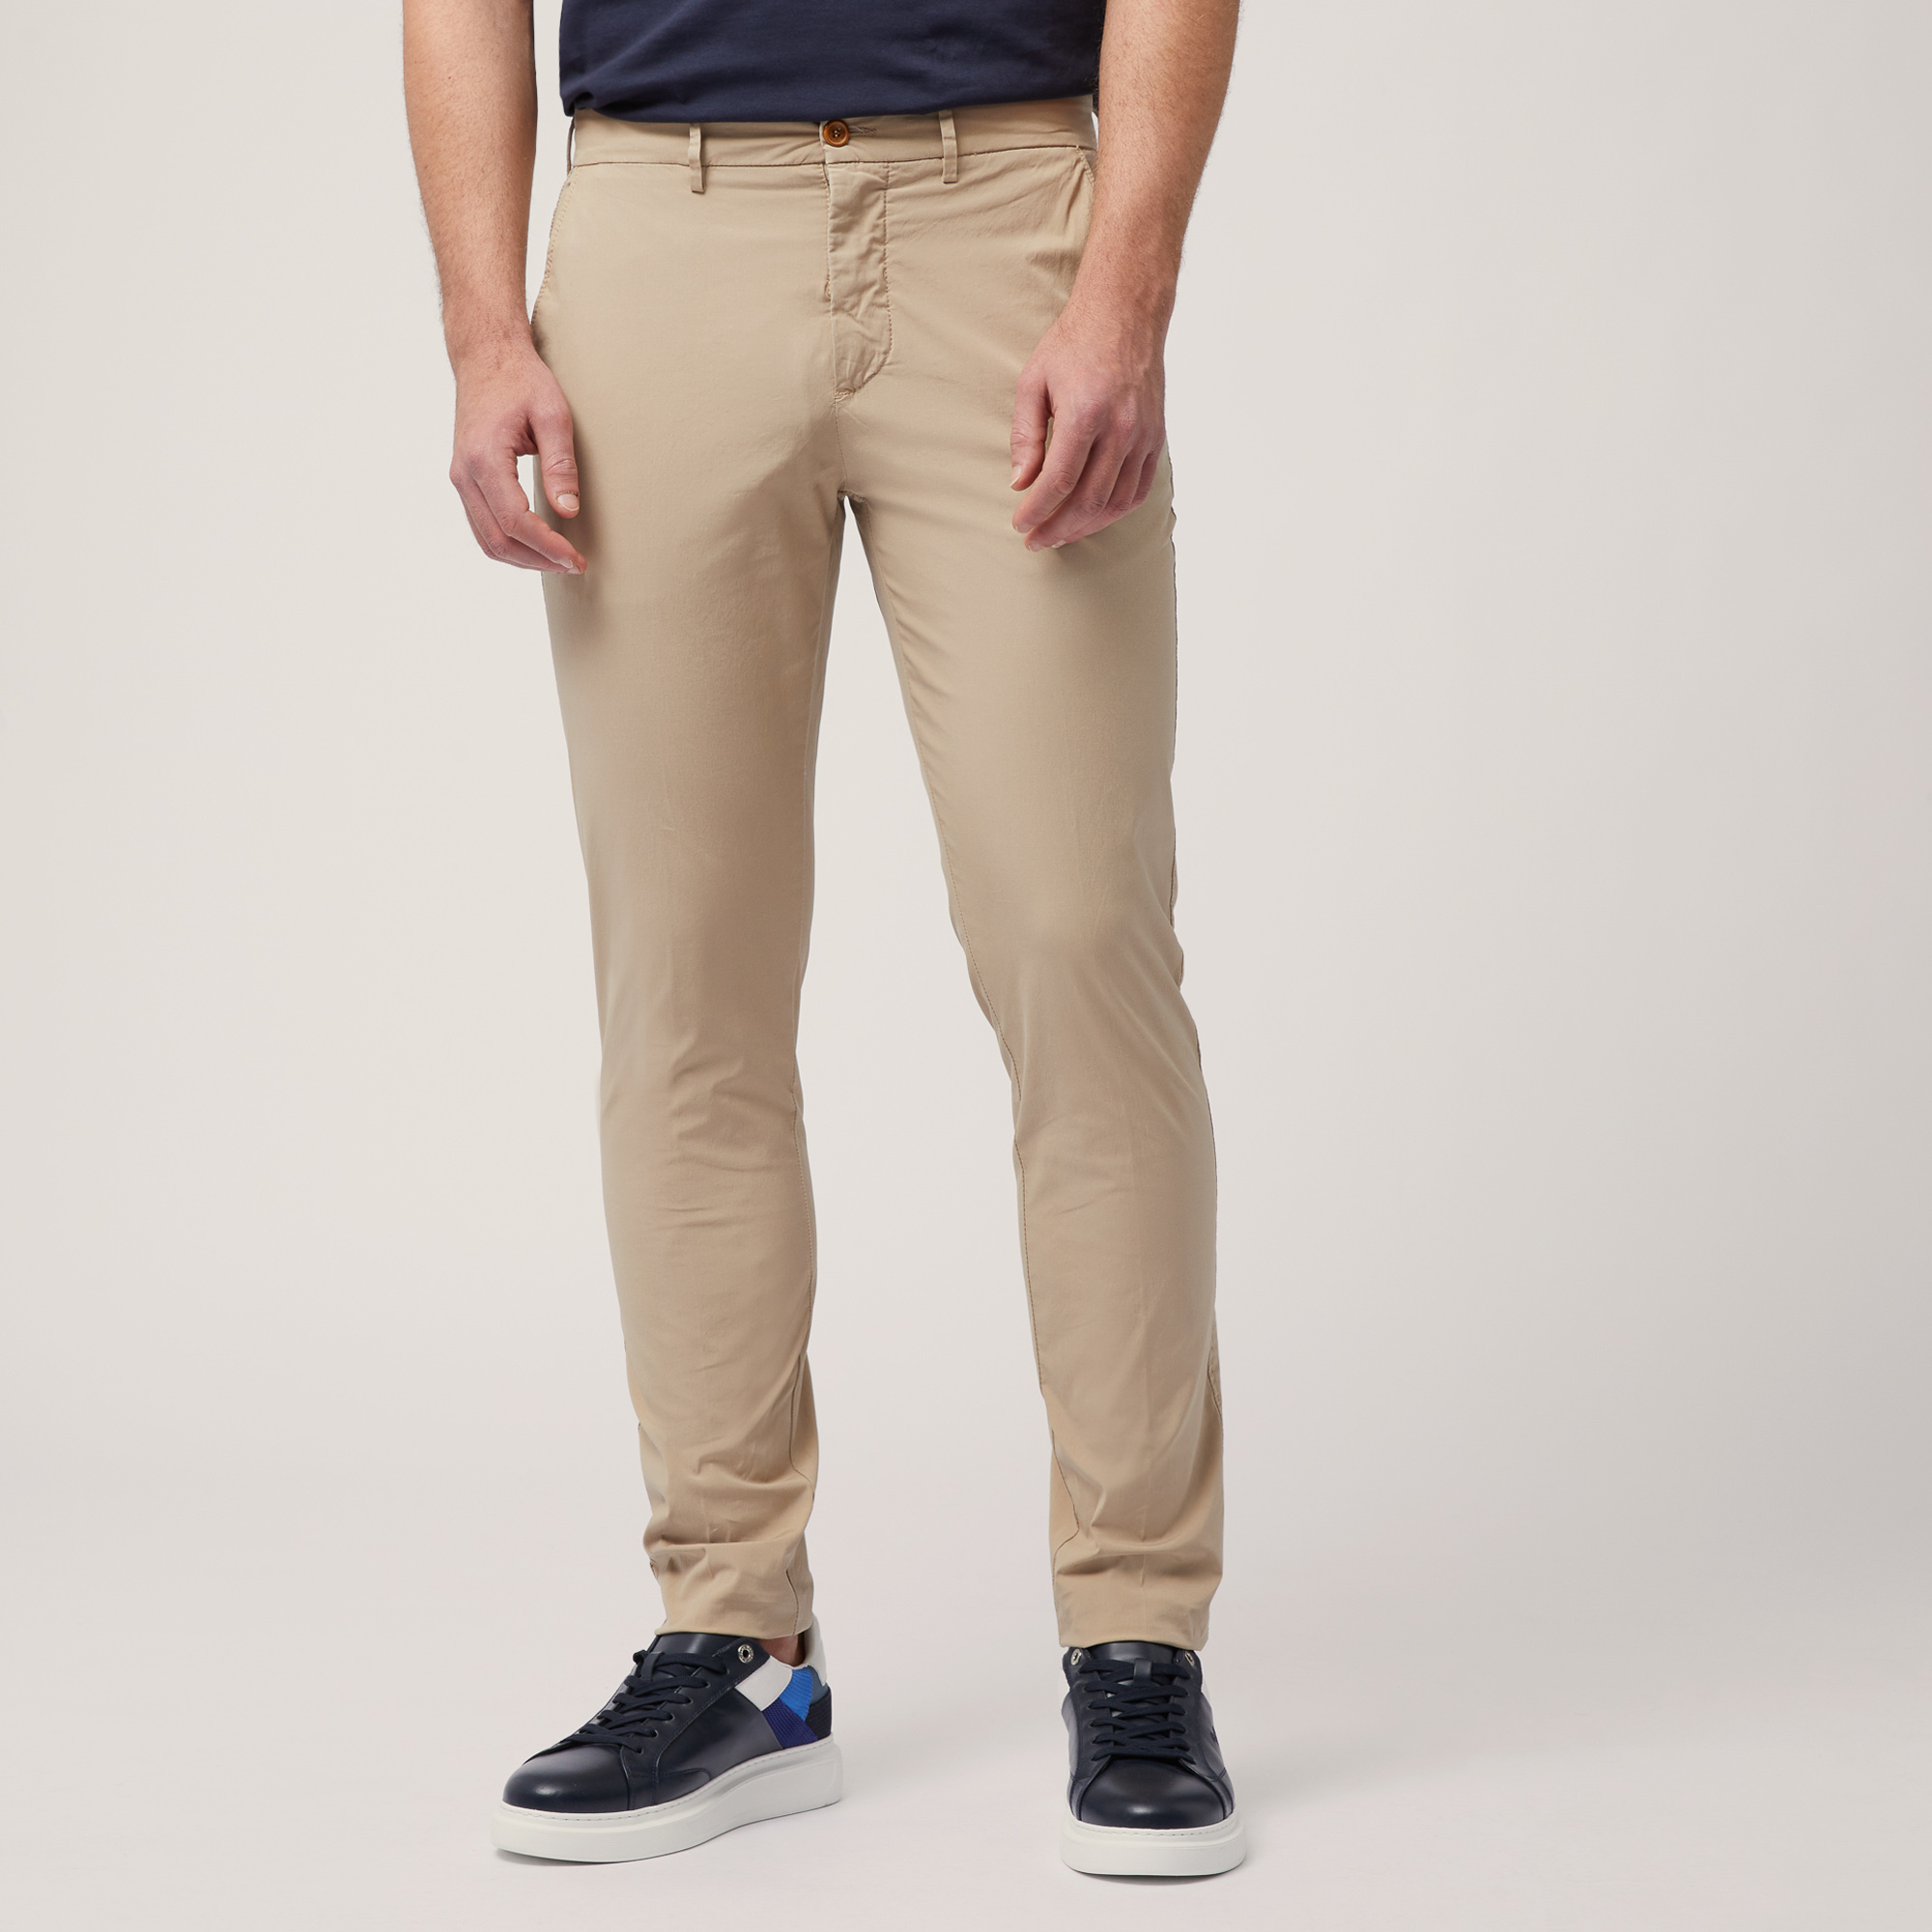 Pantaloni Chino Narrow Fit, Beige, large